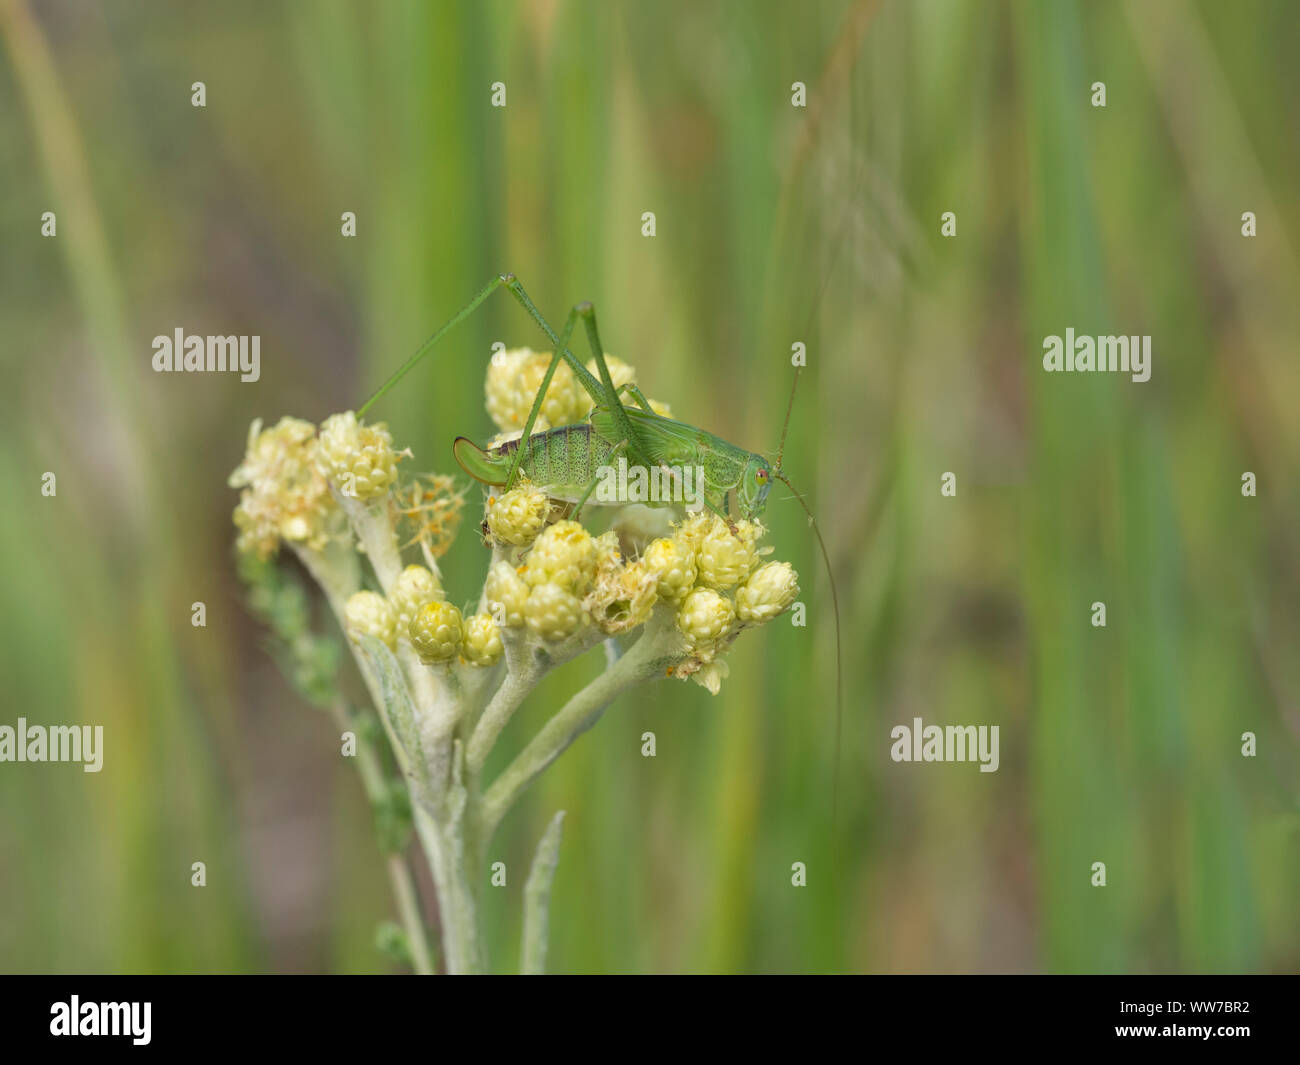 Common sickle insect, Phaneroptera falcata Stock Photo